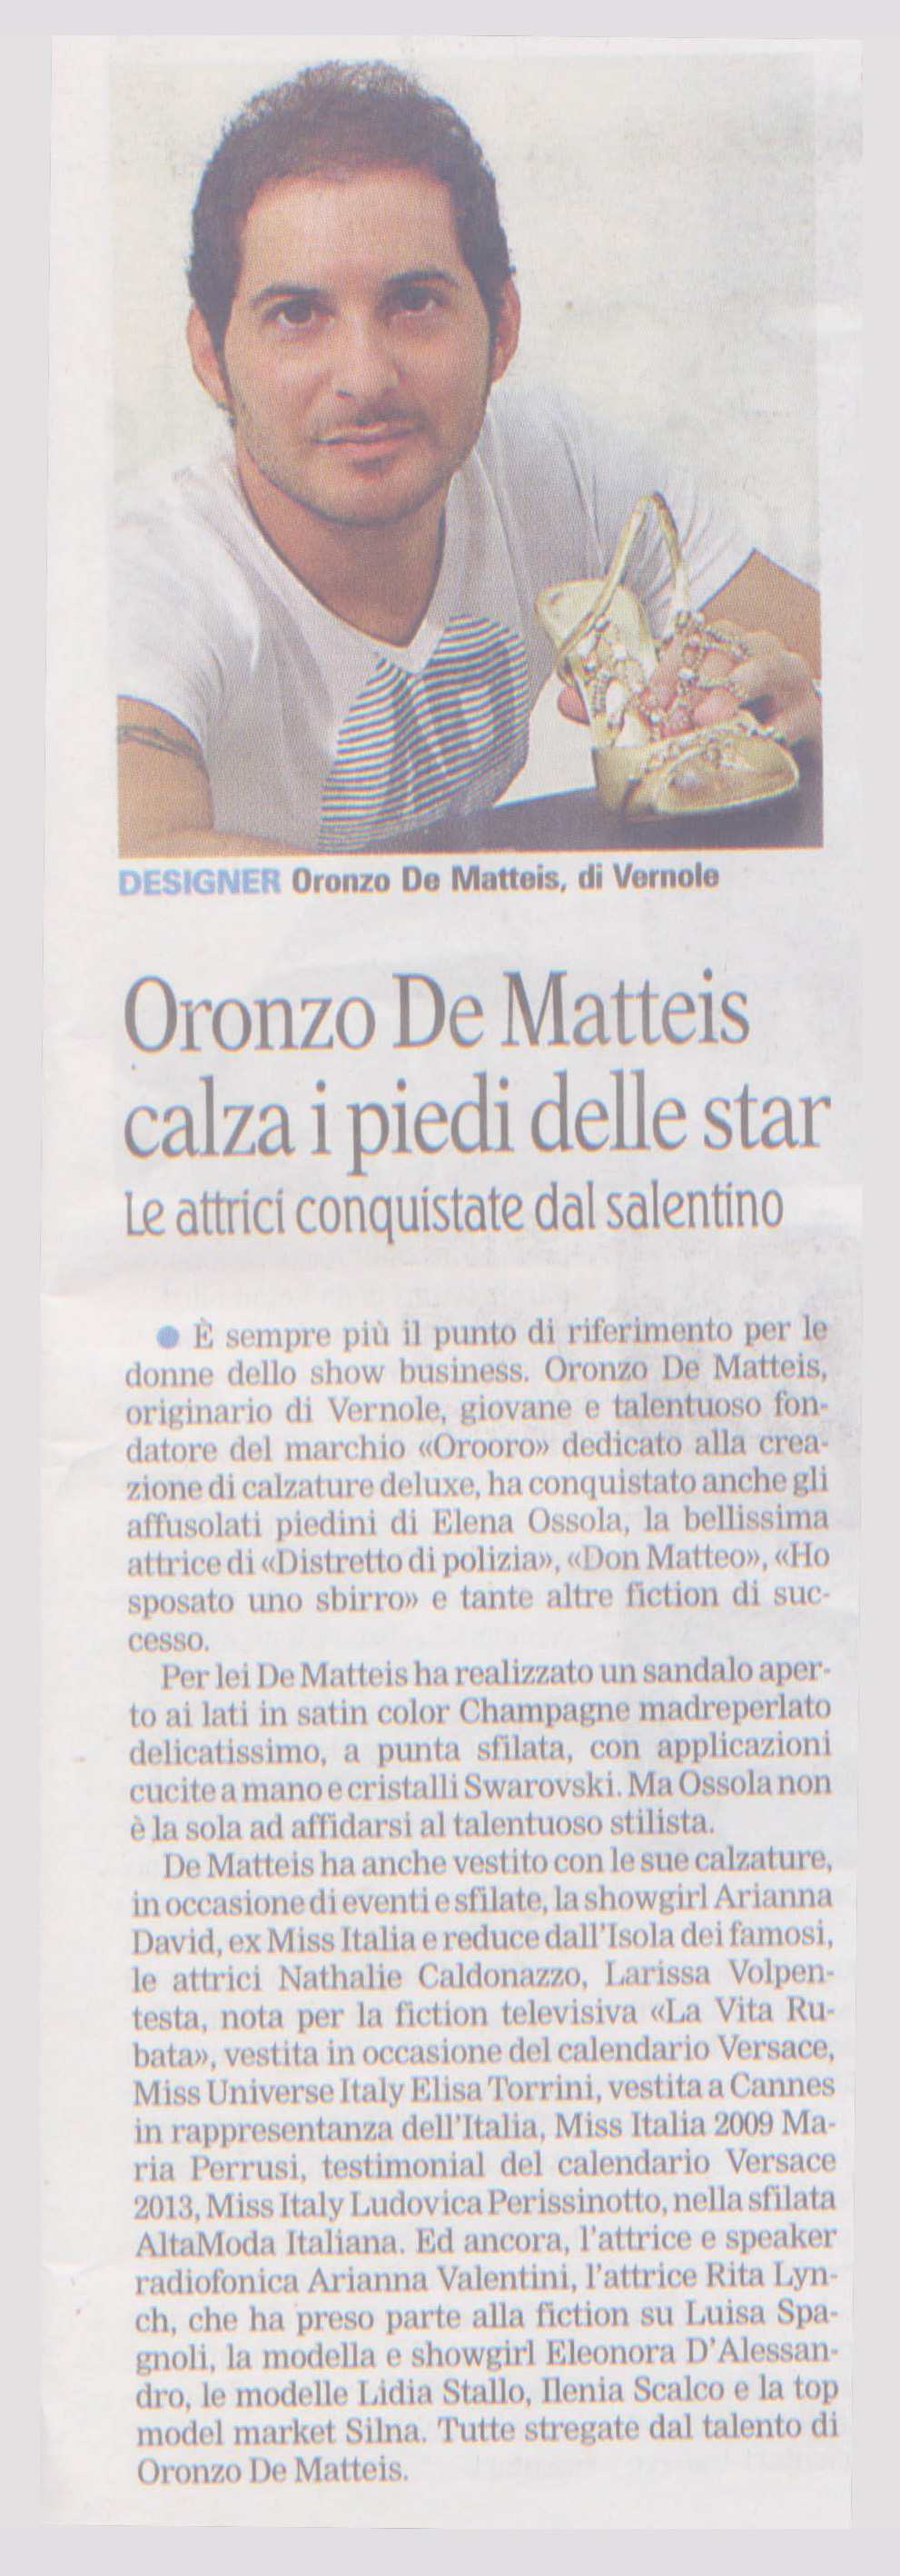 Lo stilista Oronzo De Matteis calza i piedi delle Star